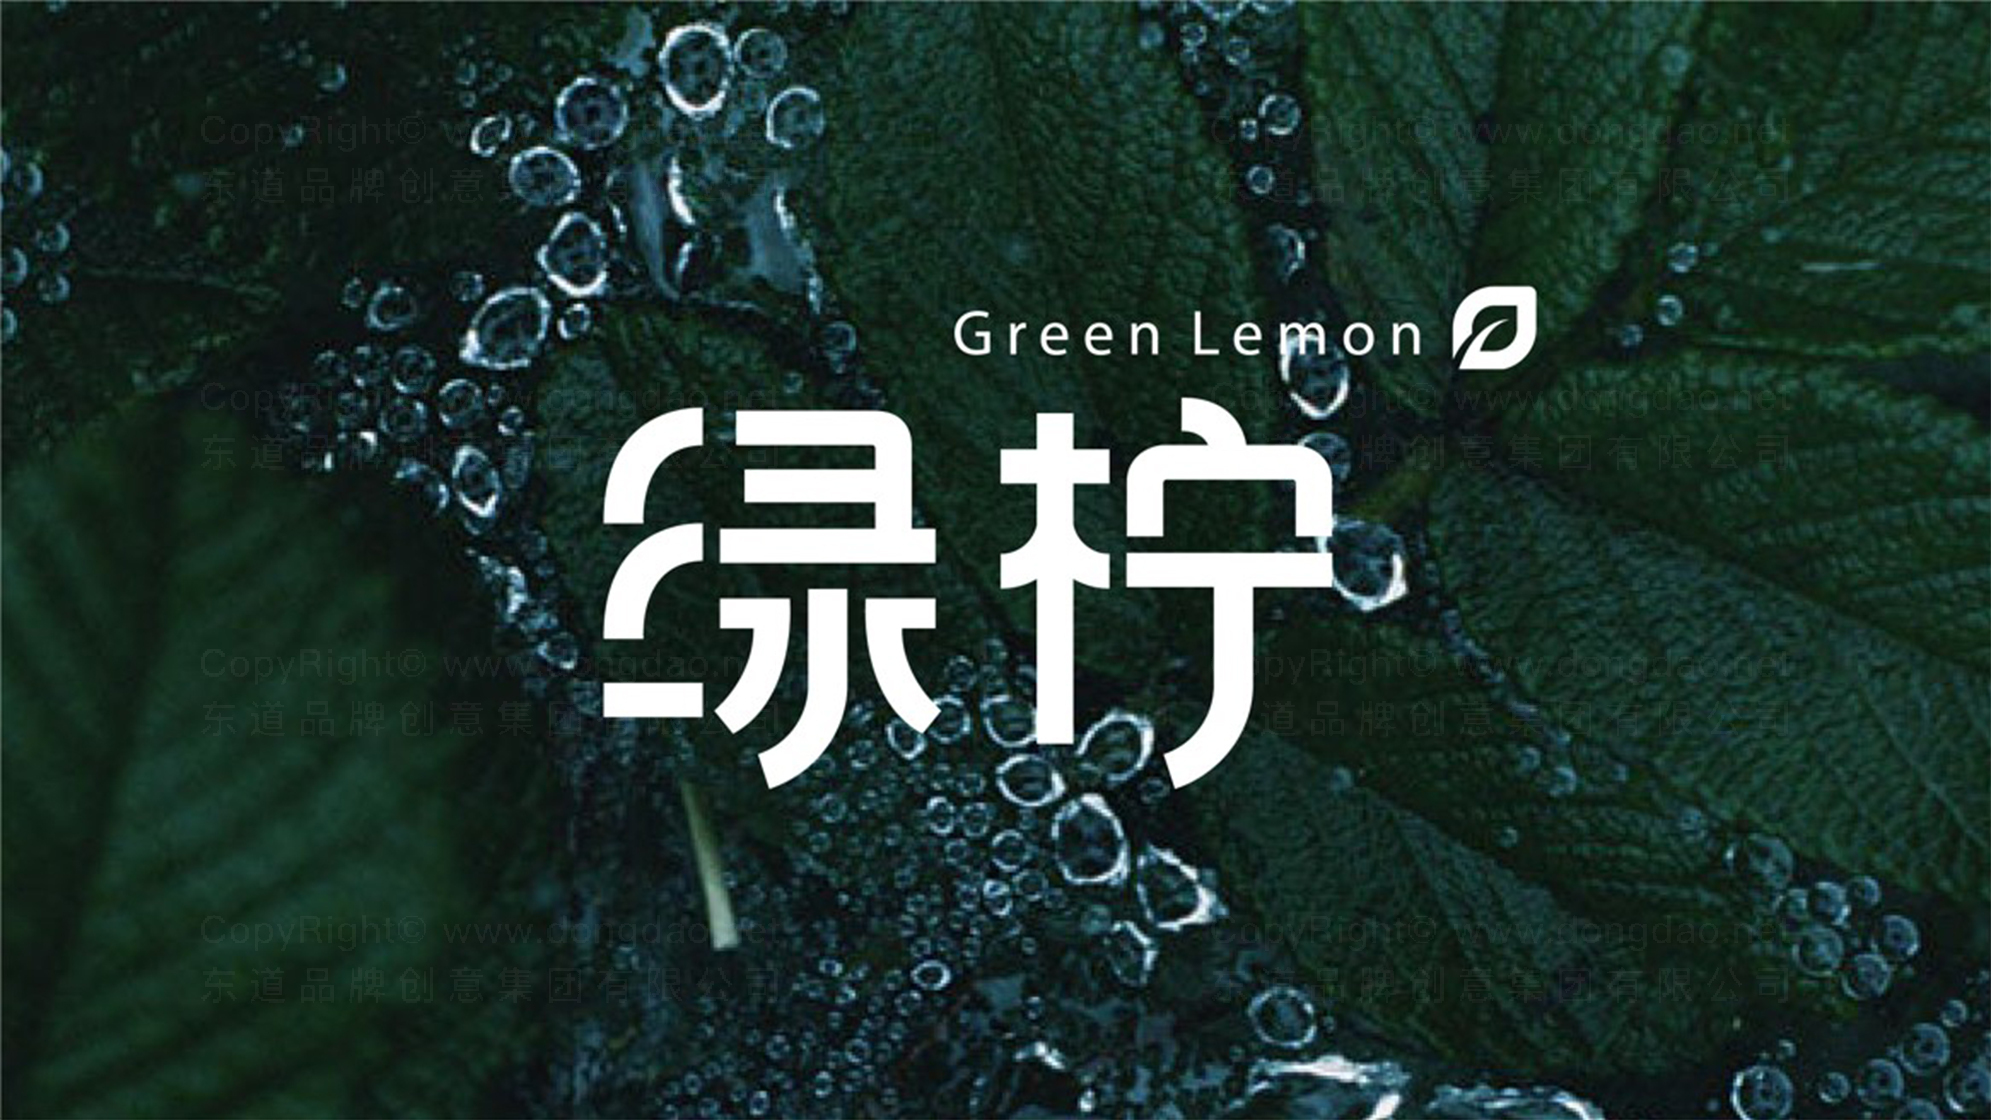 绿柠洗护产品logo设计图片素材大全案例欣赏